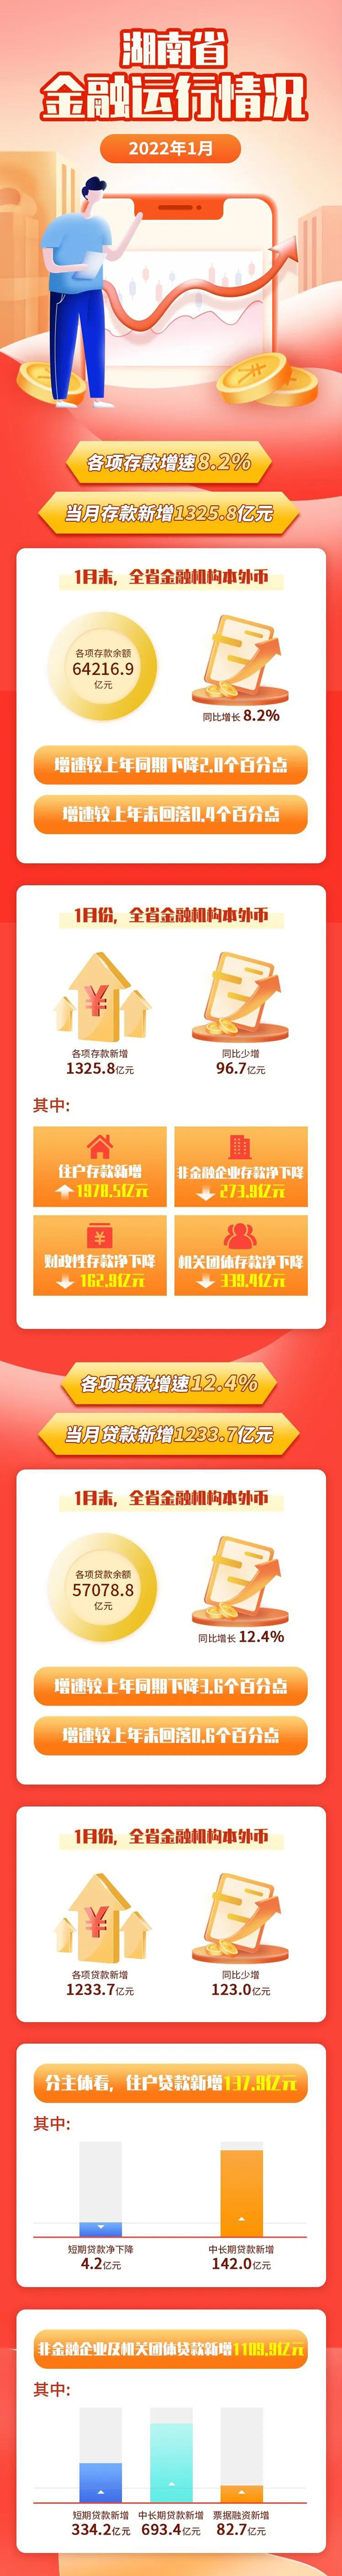 图解丨2022年1月湖南各项存款增速8.2%  当月存款新增1325.8亿元